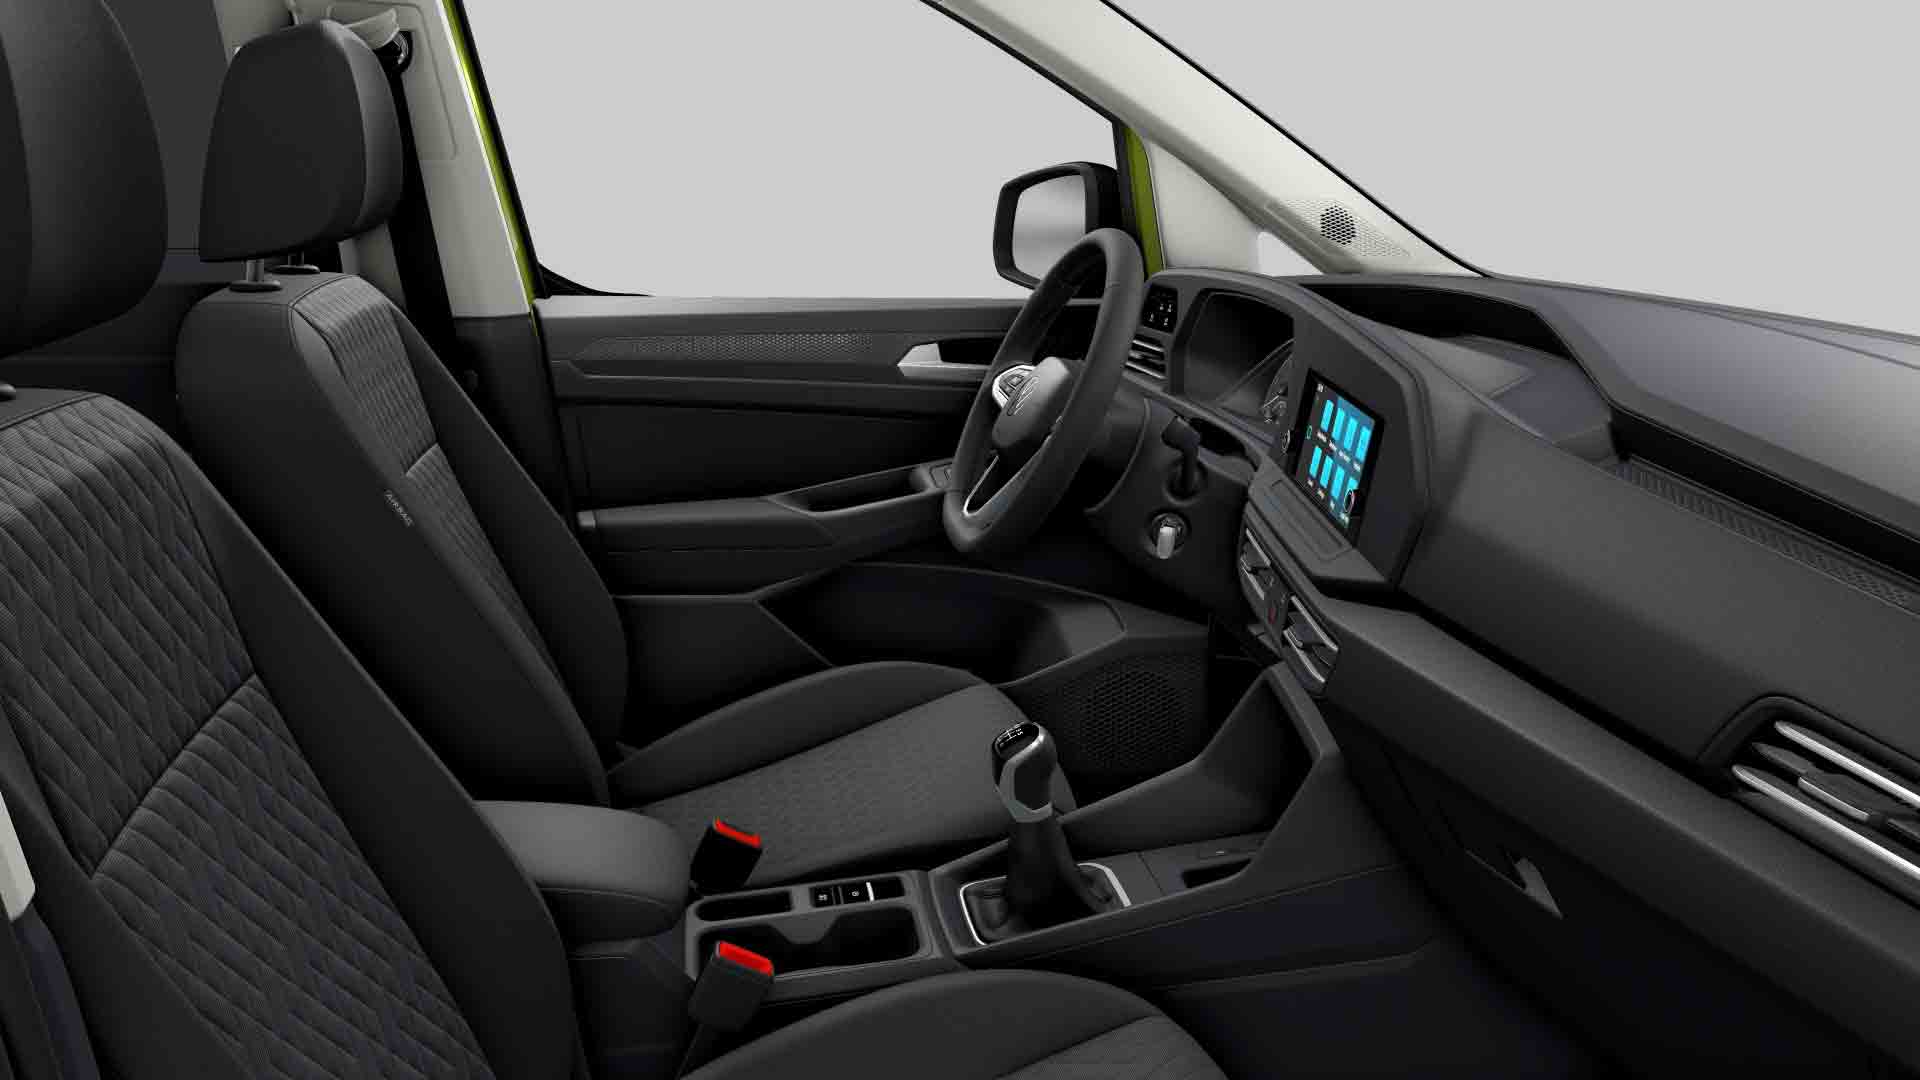 VW Caddy Maxi Life 2022 zelená Golden - interiér vpředu